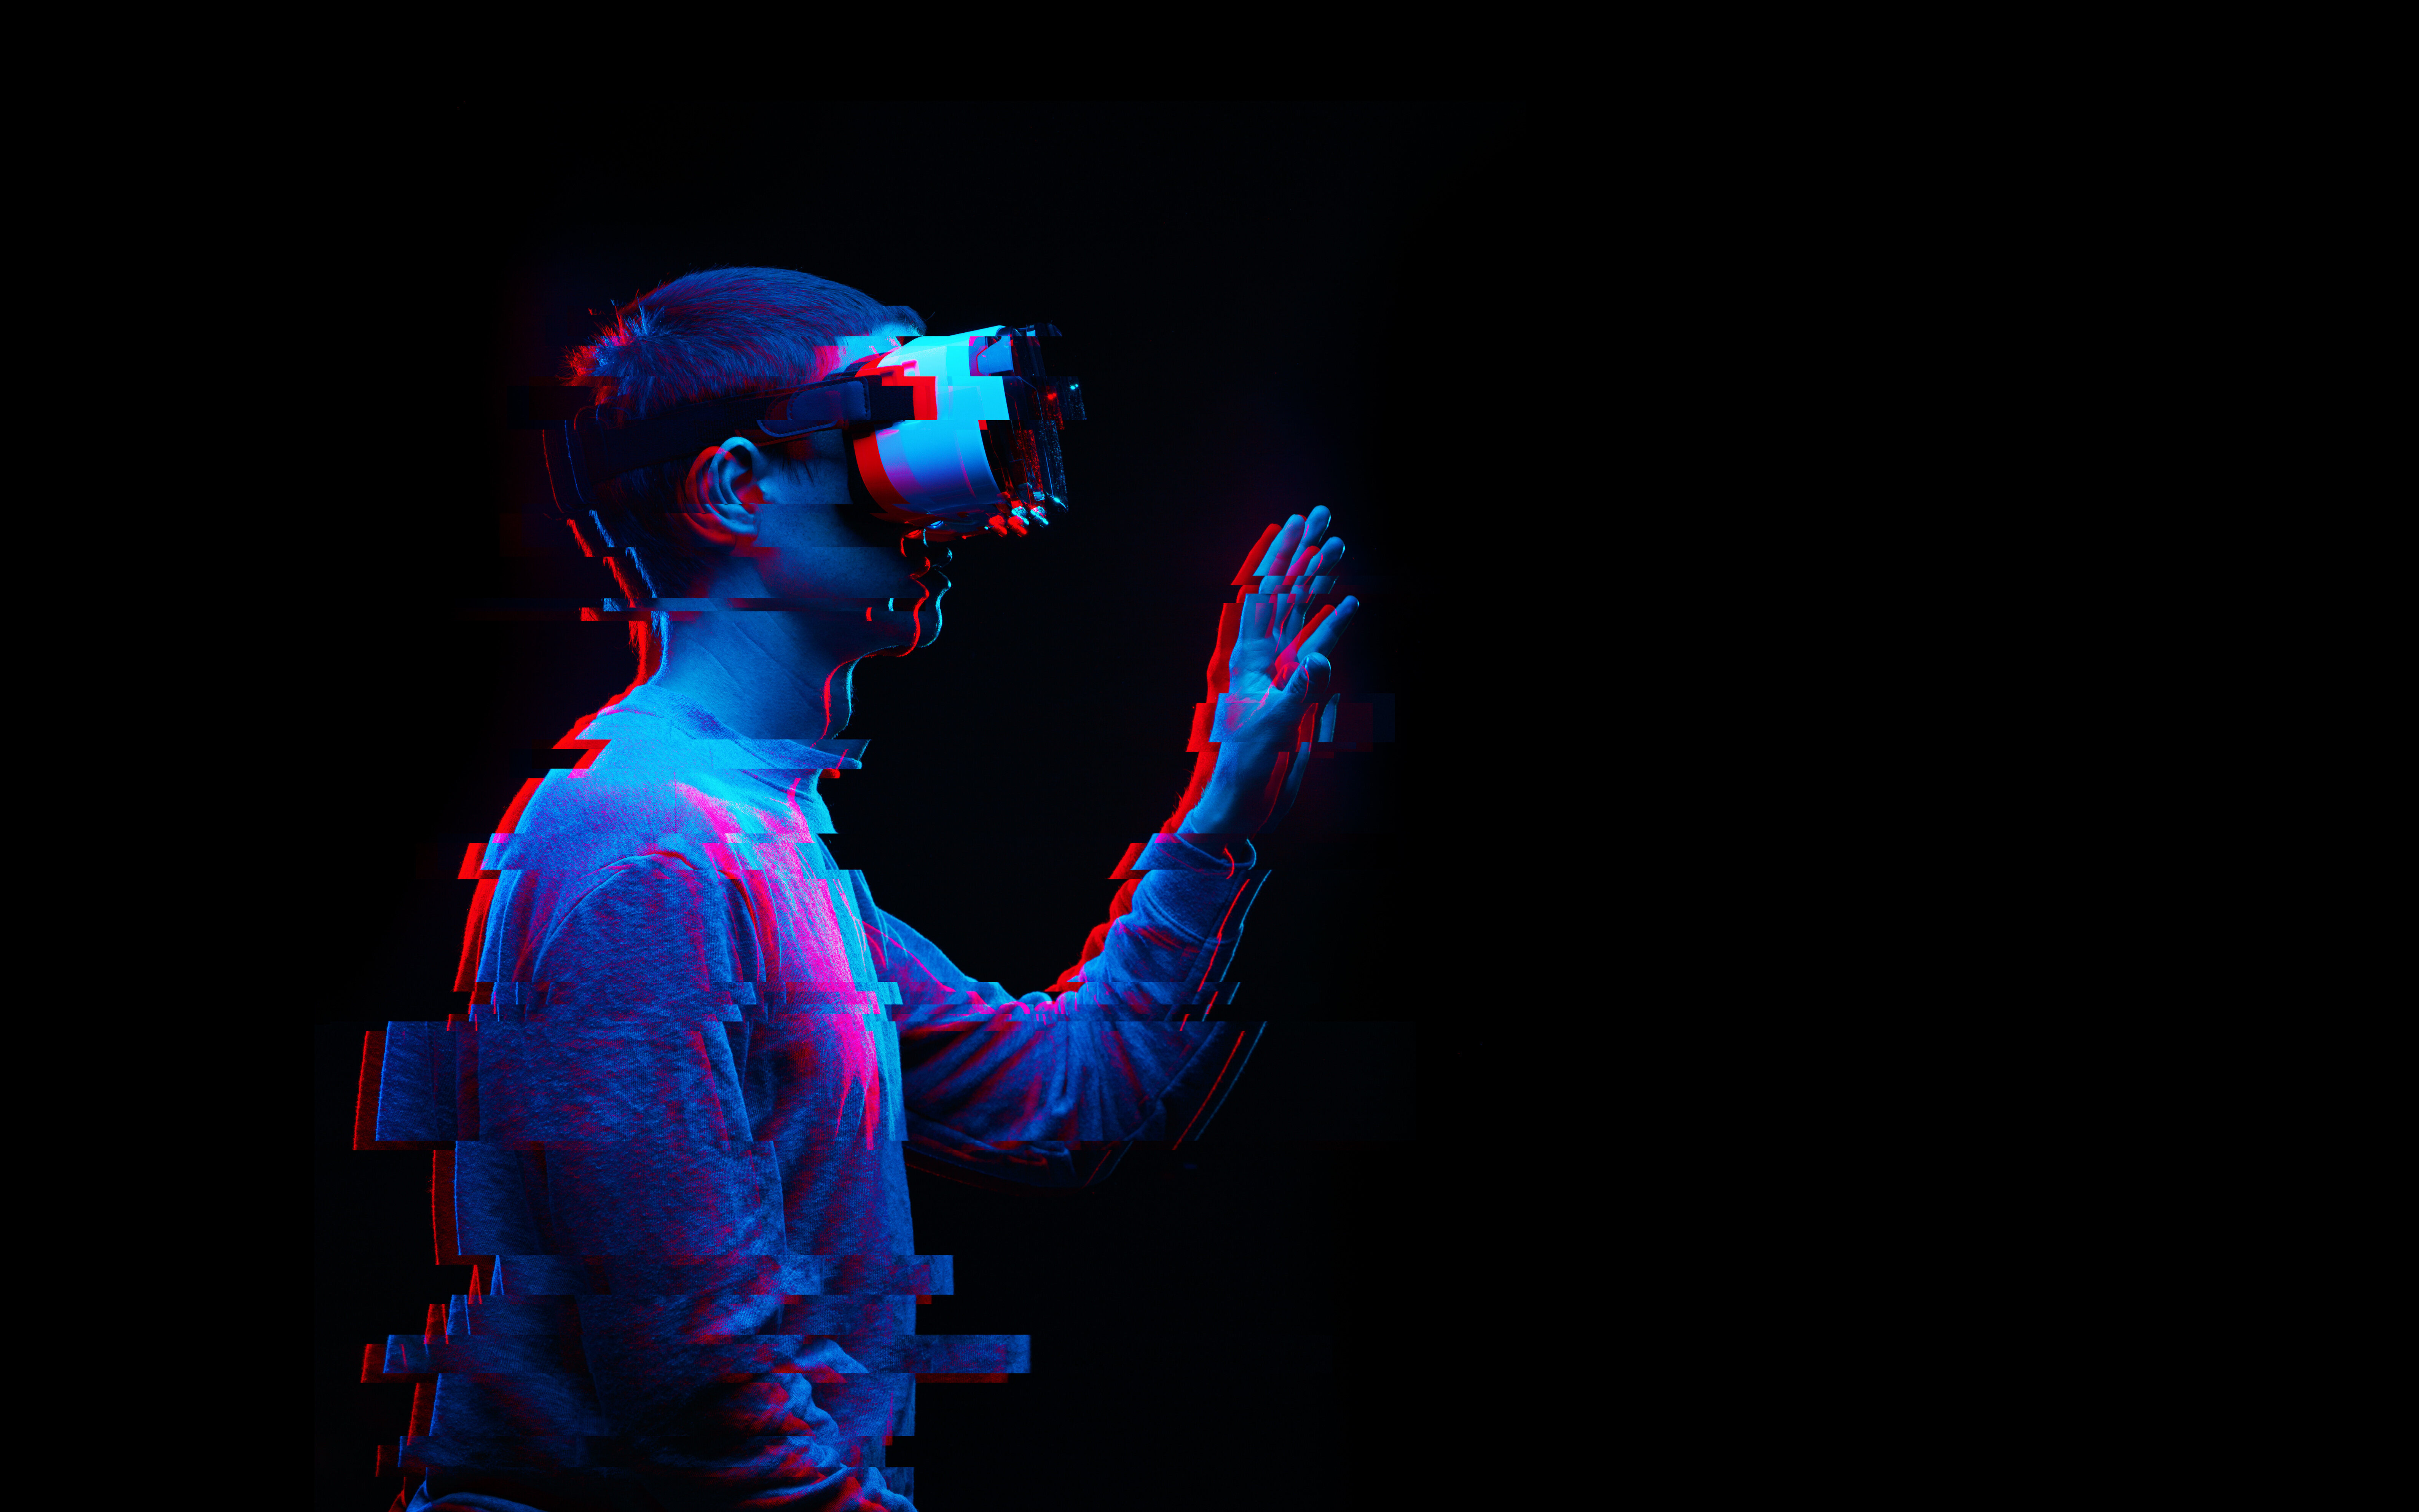 Foto: Ein Mann benutzt ein Virtual-Reality-Brille. Bild mit Glitch-Effekt. © nuclear_lily | stock.adobe.com